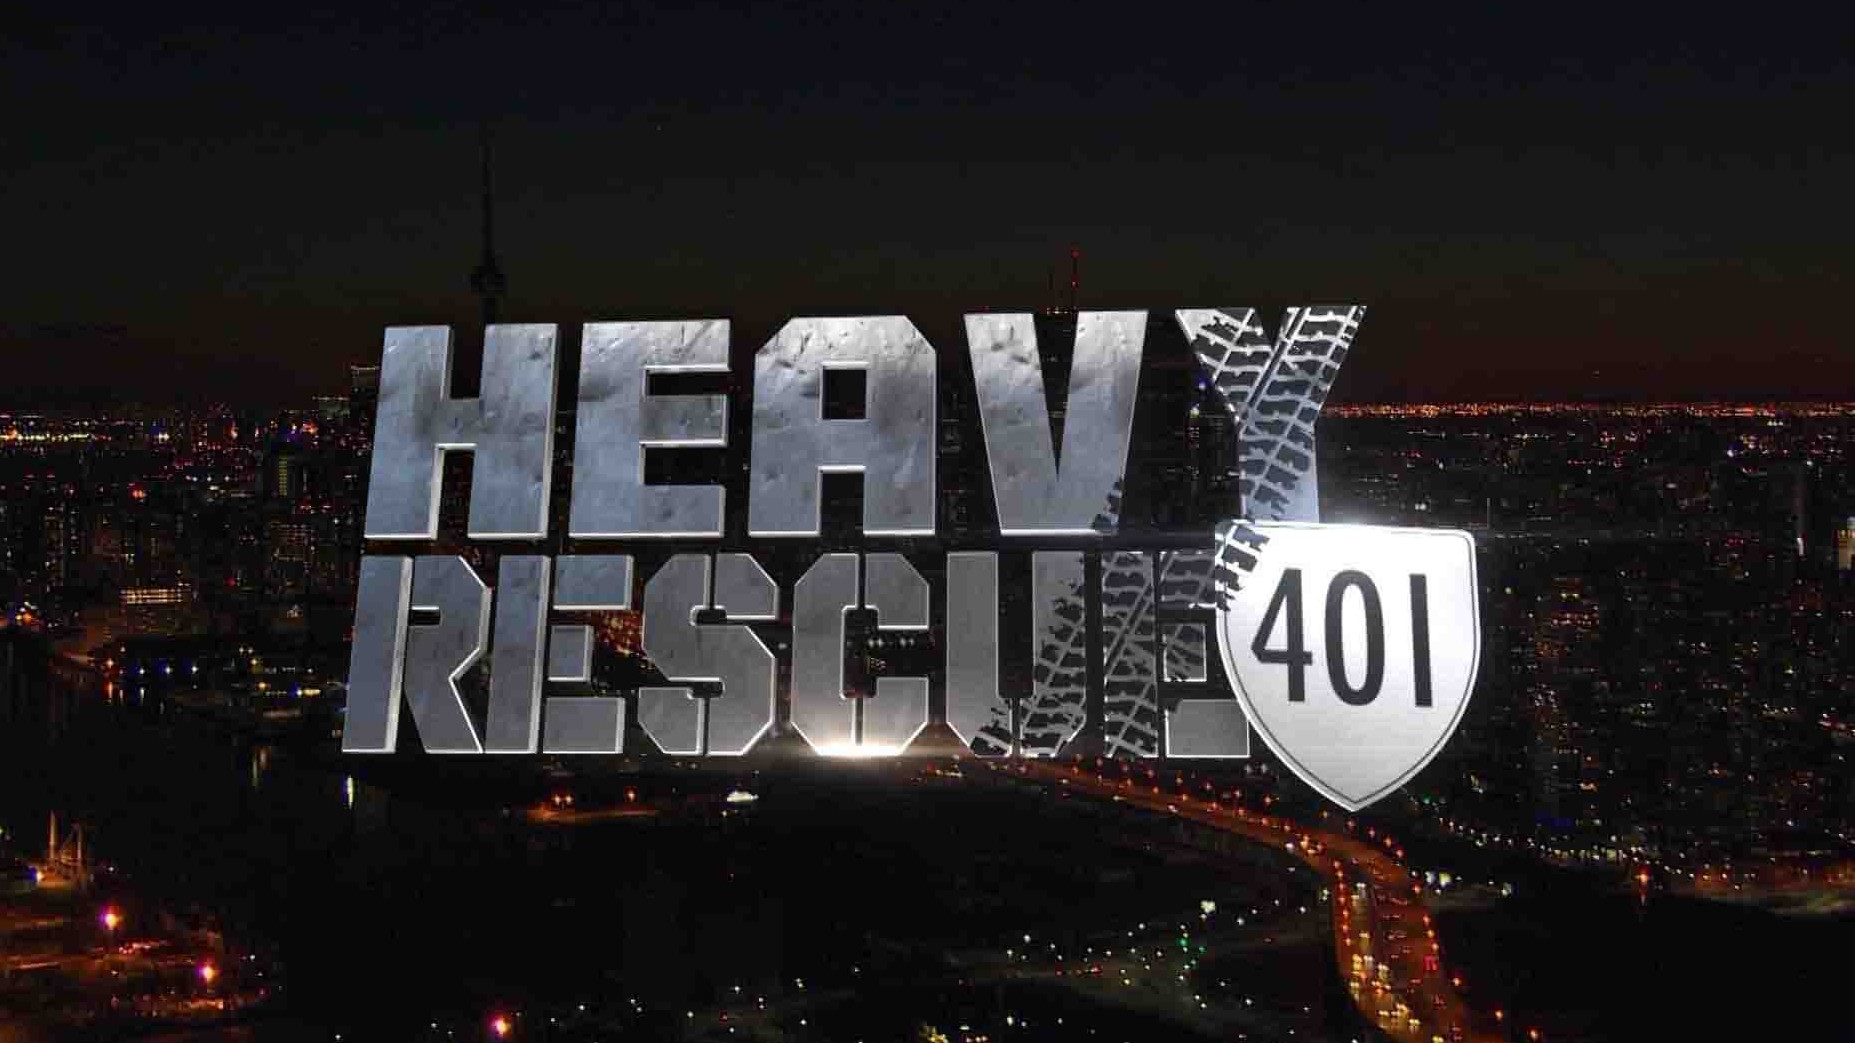 探索频道《重型救援：401 Heavy Rescue: 401 2018》第1-2季全19集 英语多国中字 1080P高清网盘下载